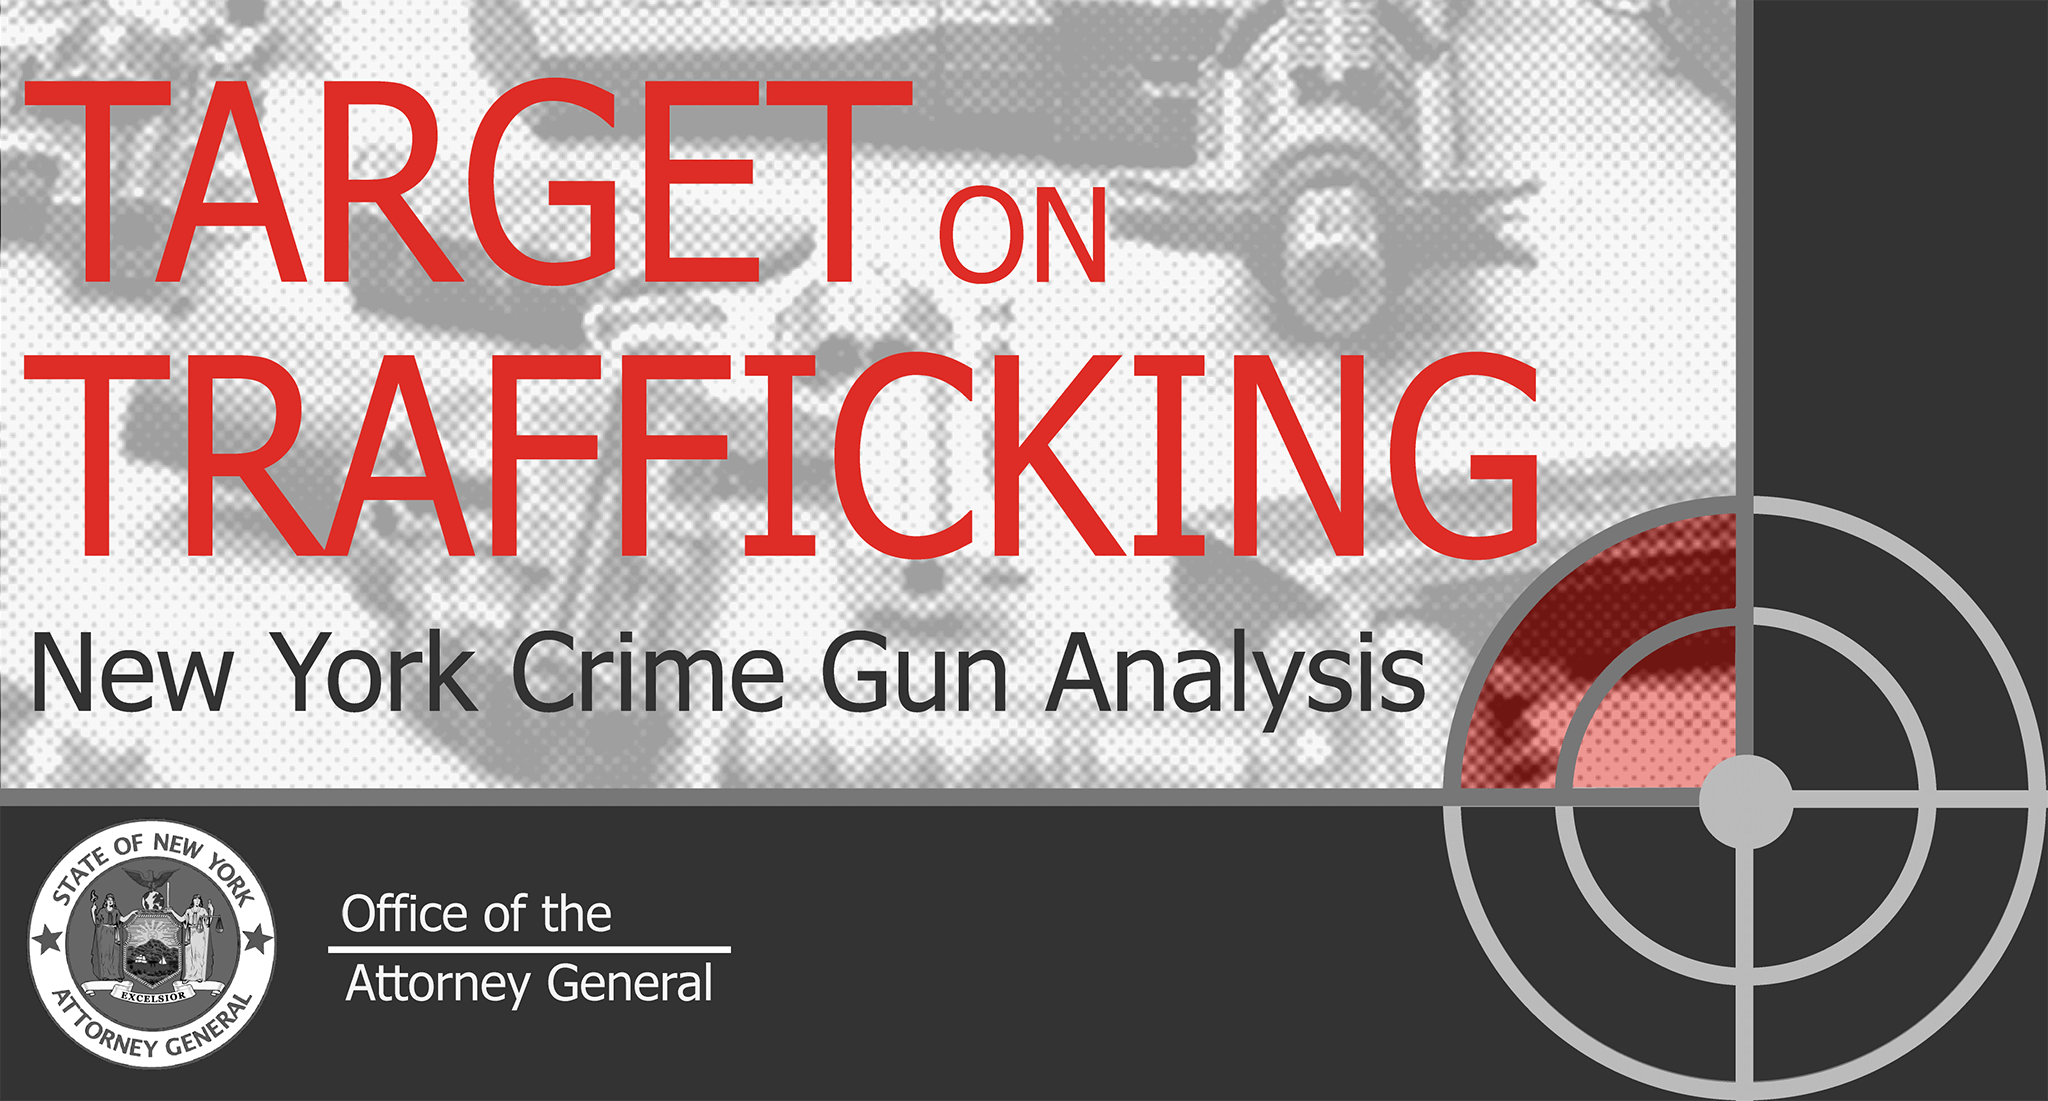 Target on Trafficking: New York Crime Gun Analysis. New York Attorney General